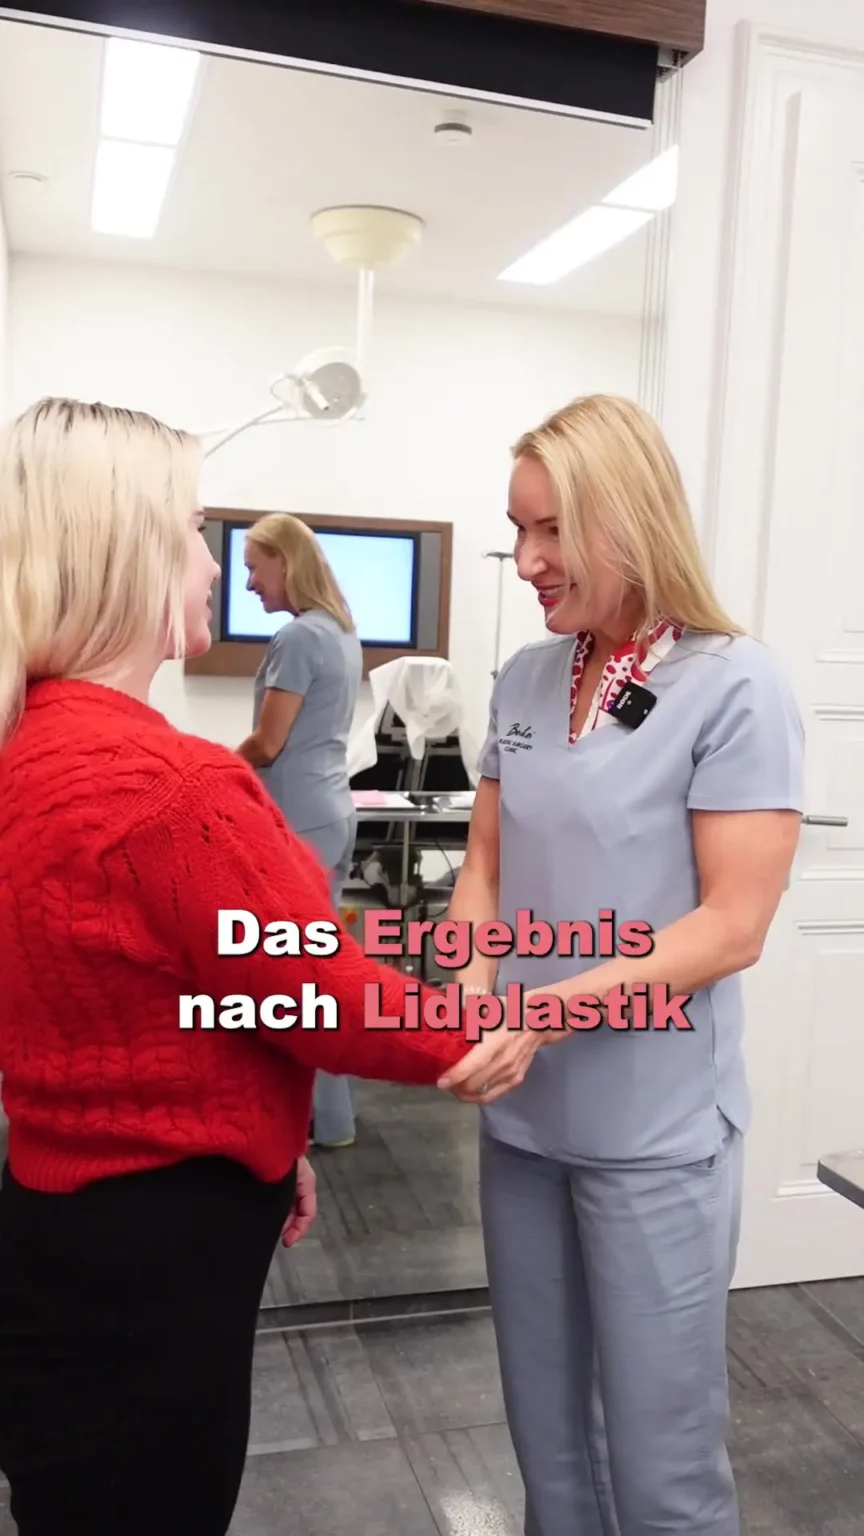 Dr. Berkei und eine glückliche Patientin mit dem Text "Das Ergebnis nach Lidplastik".